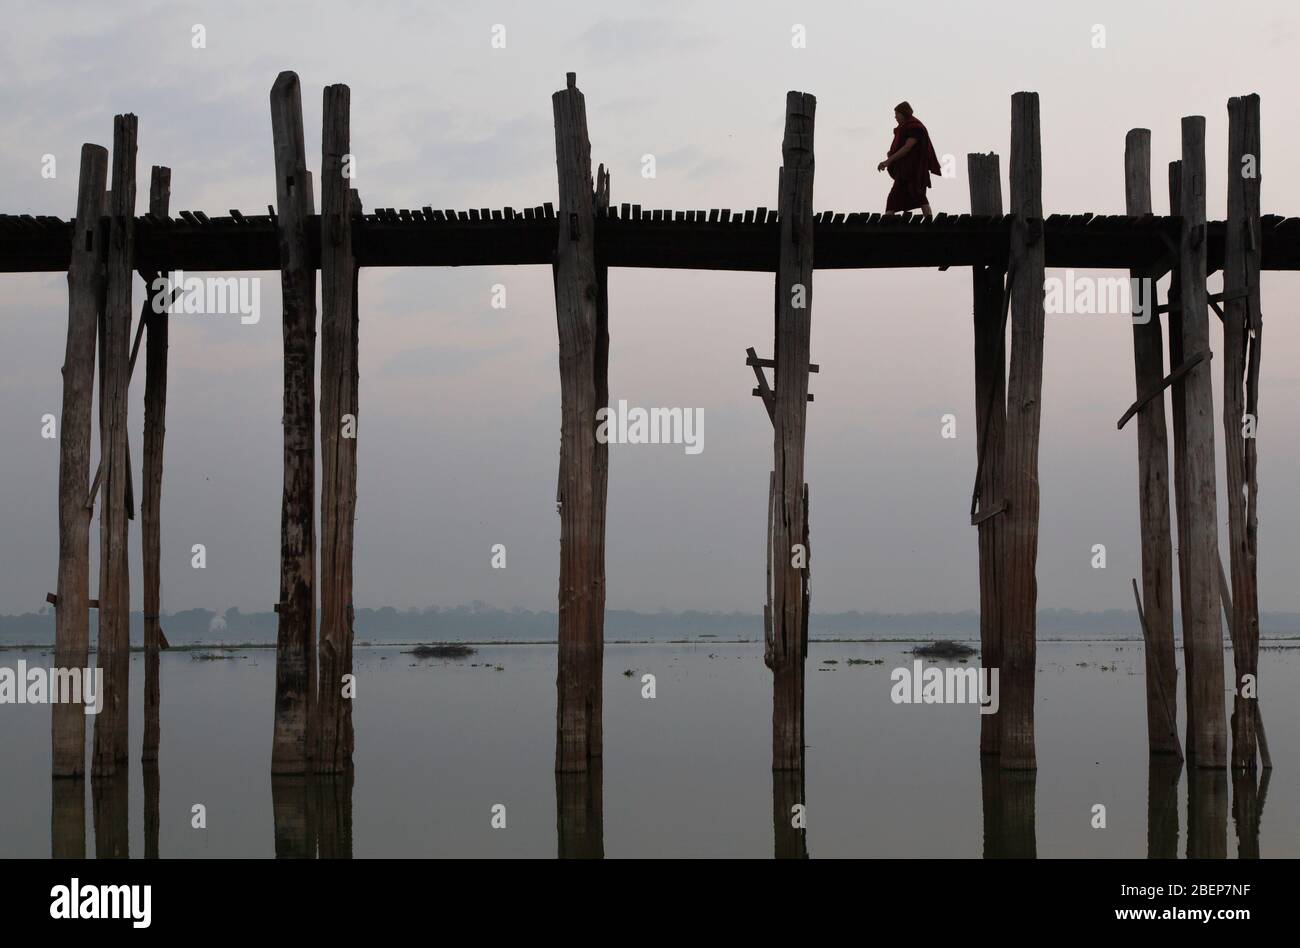 Primo piano del ponte pedonale in legno di teak più lungo del mondo: U Bein-bridge con una persona irriconoscibile, Mandalay, Myanmar Foto Stock